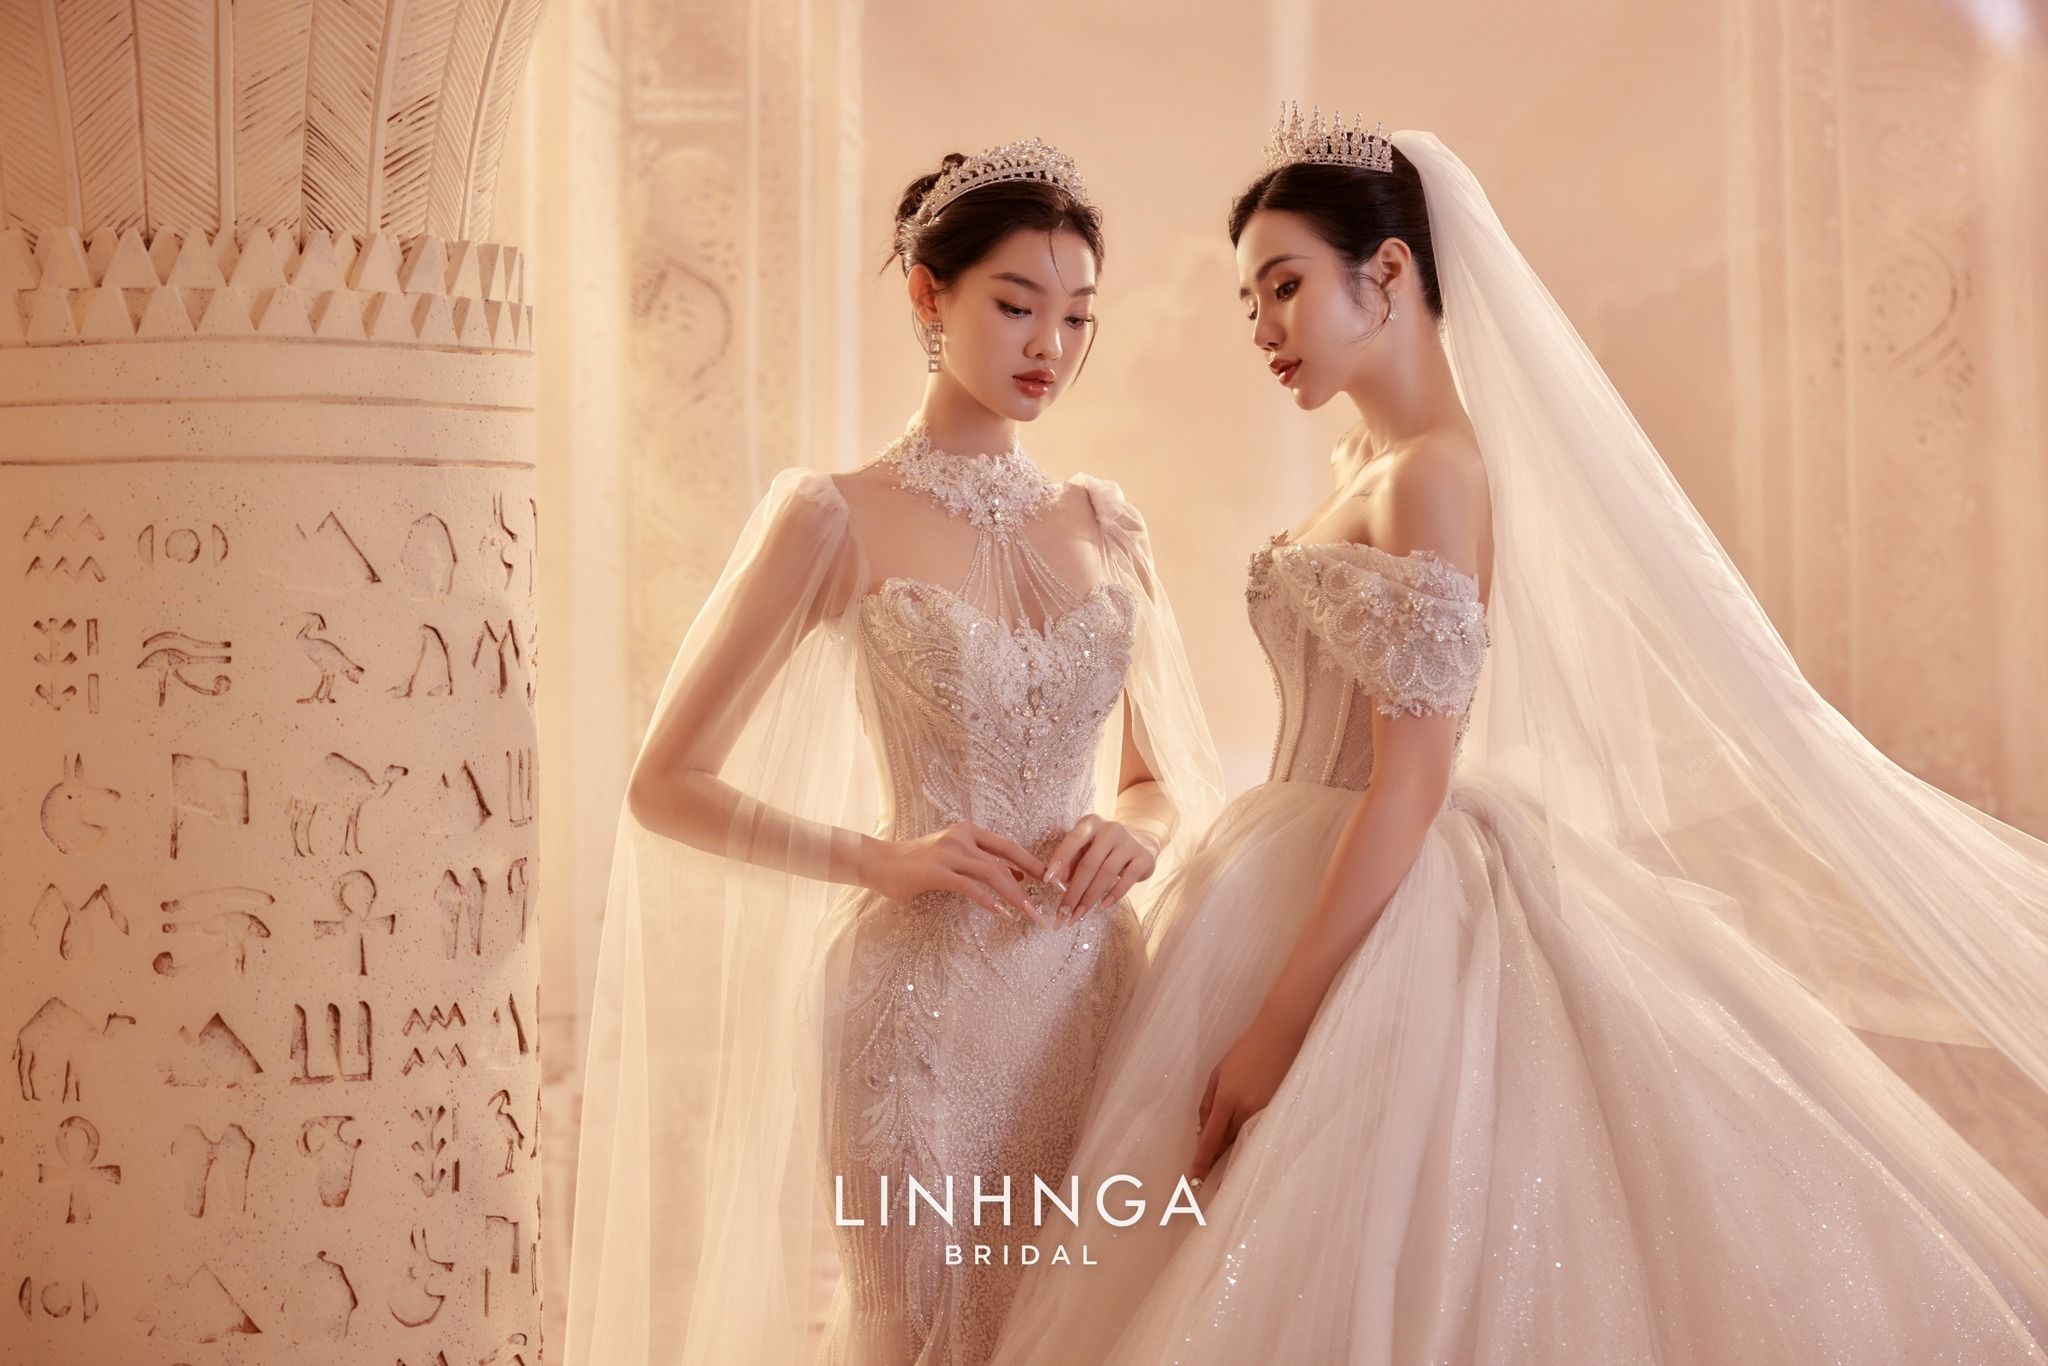 Linh Nga Bridal - Thương hiệu váy cưới cao cấp đính kết thủ công hàng đầu Việt Nam